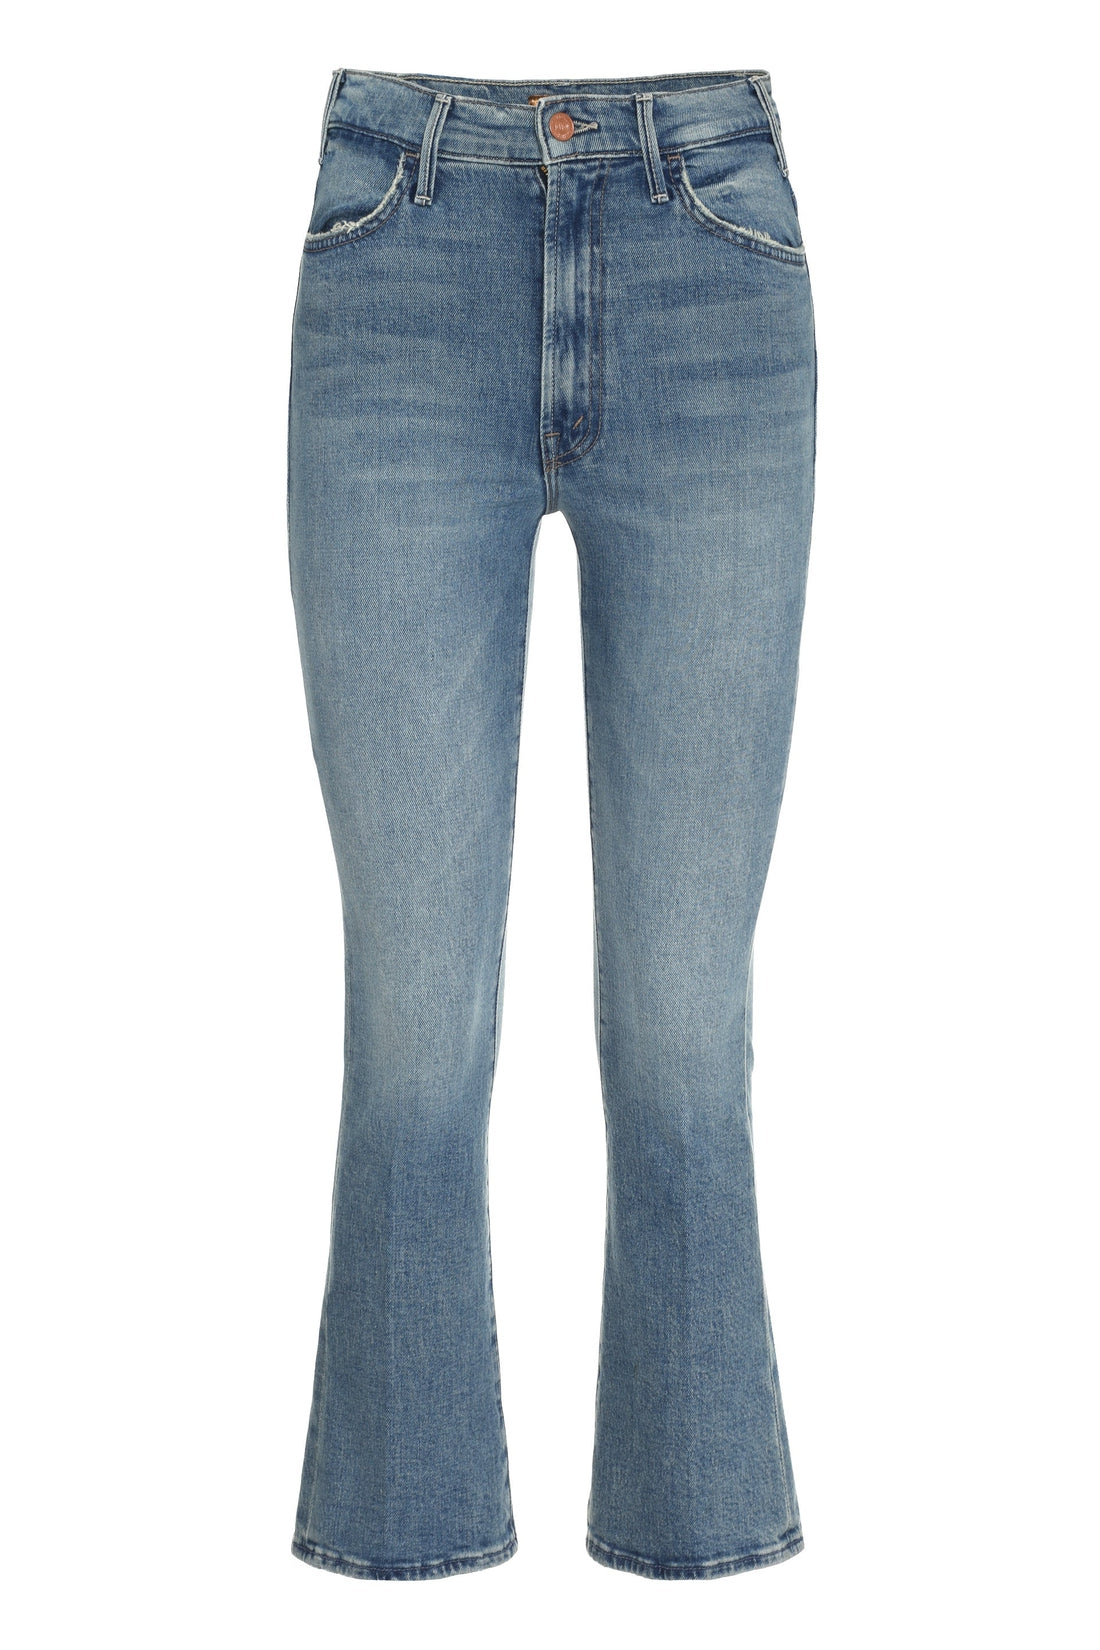 Mother-OUTLET-SALE-The Hustler Ankle 5-pocket jeans-ARCHIVIST